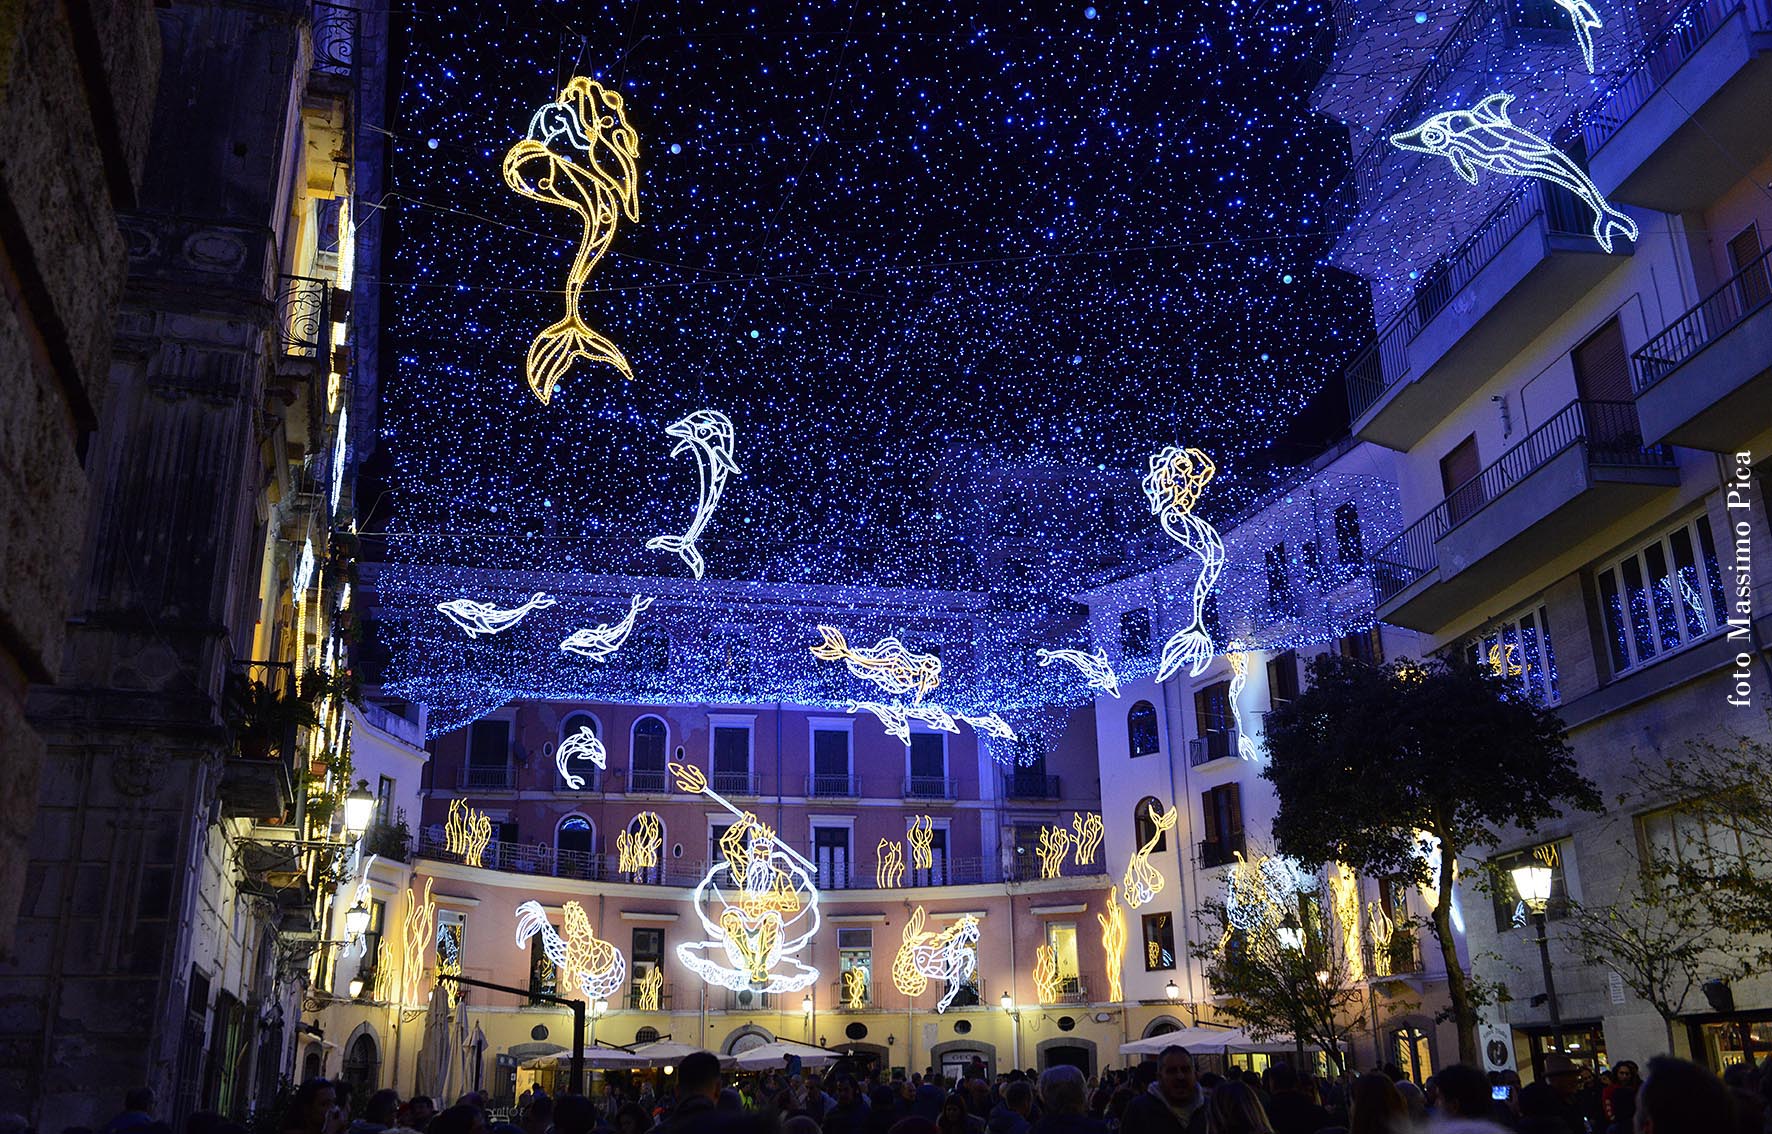 Luci Di Natale Salerno.A Salerno E Gia Natale Al Via Le Luci Di Artista